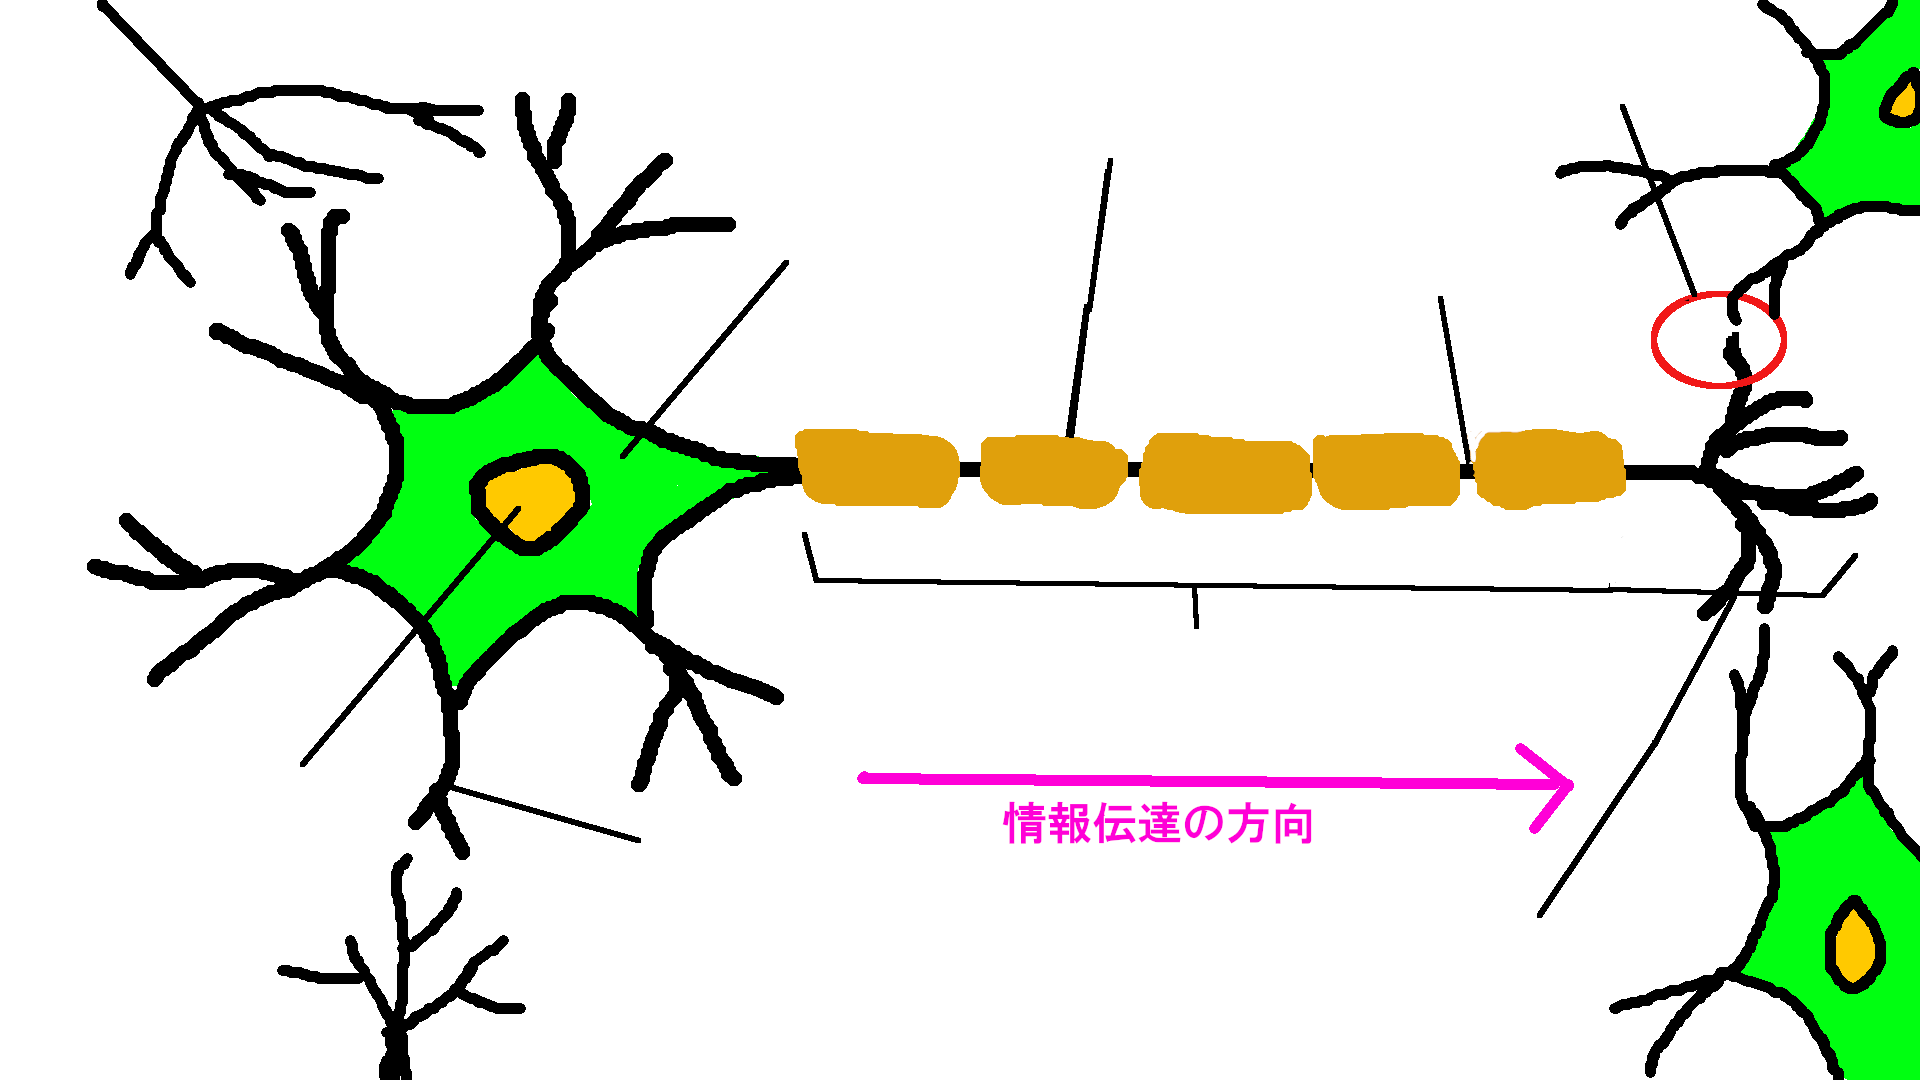 神経細胞